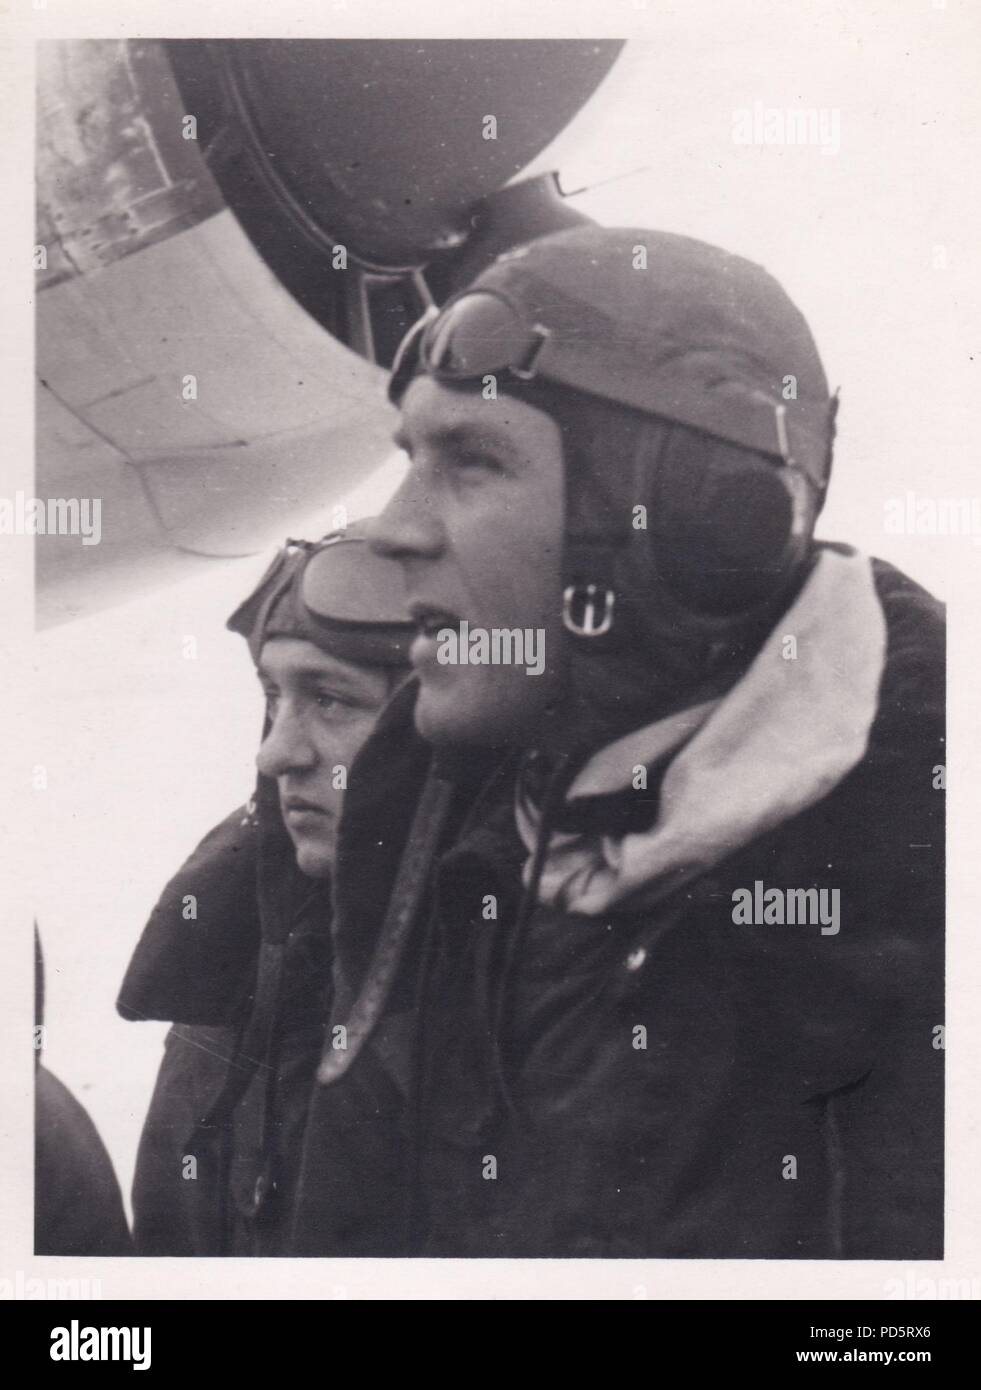 Droit de l'album photo de l'Oberleutnant Oscar Müller de la Kampfgeschwader 1 : l'Oberleutnant Johannes Brandenburg, Staffelkapitän du 4./kg 1, à l'Aérodrome de Dno en Russie au début de 1942. Le Brandebourg a été tué avec son équipage dans une explosion en plein vol de l'avion le 28 février 1942 après son avion a été touché par une bombe publié par un autre avion volant au-dessus. Le Brandebourg a été décerné la Croix de Chevalier de la Croix de Fer le 18 septembre 1940, alors qu'il servait avec Stukageschwader 2 dans l'Ouest. Banque D'Images